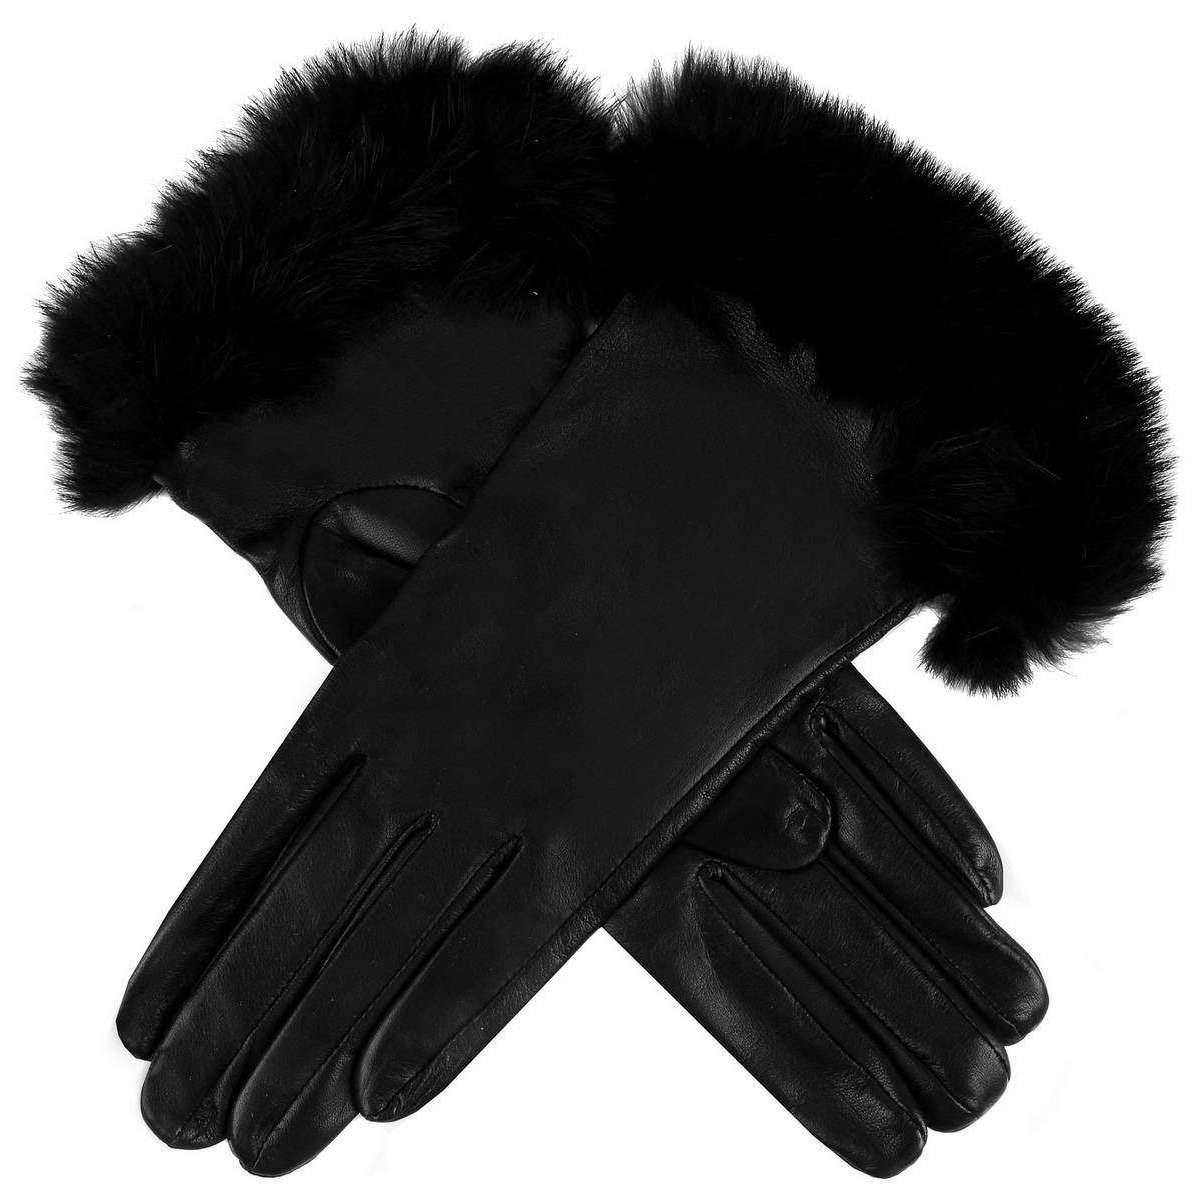 Dents Glamis Silk Lined Gloves - Black/Black/Rose Pink